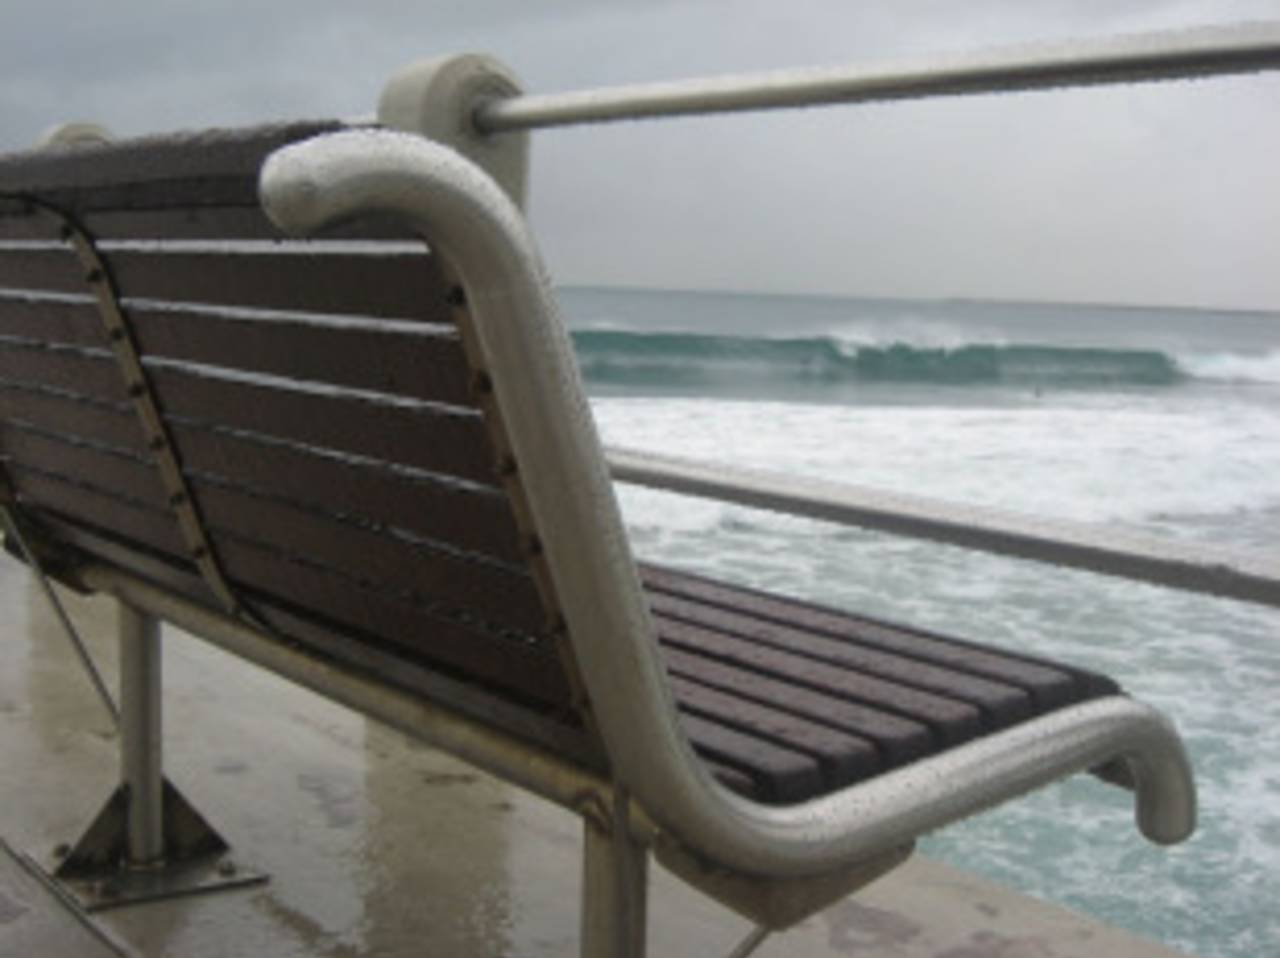 A bench facing the sea in Durban, Durban, September 11, 2010 